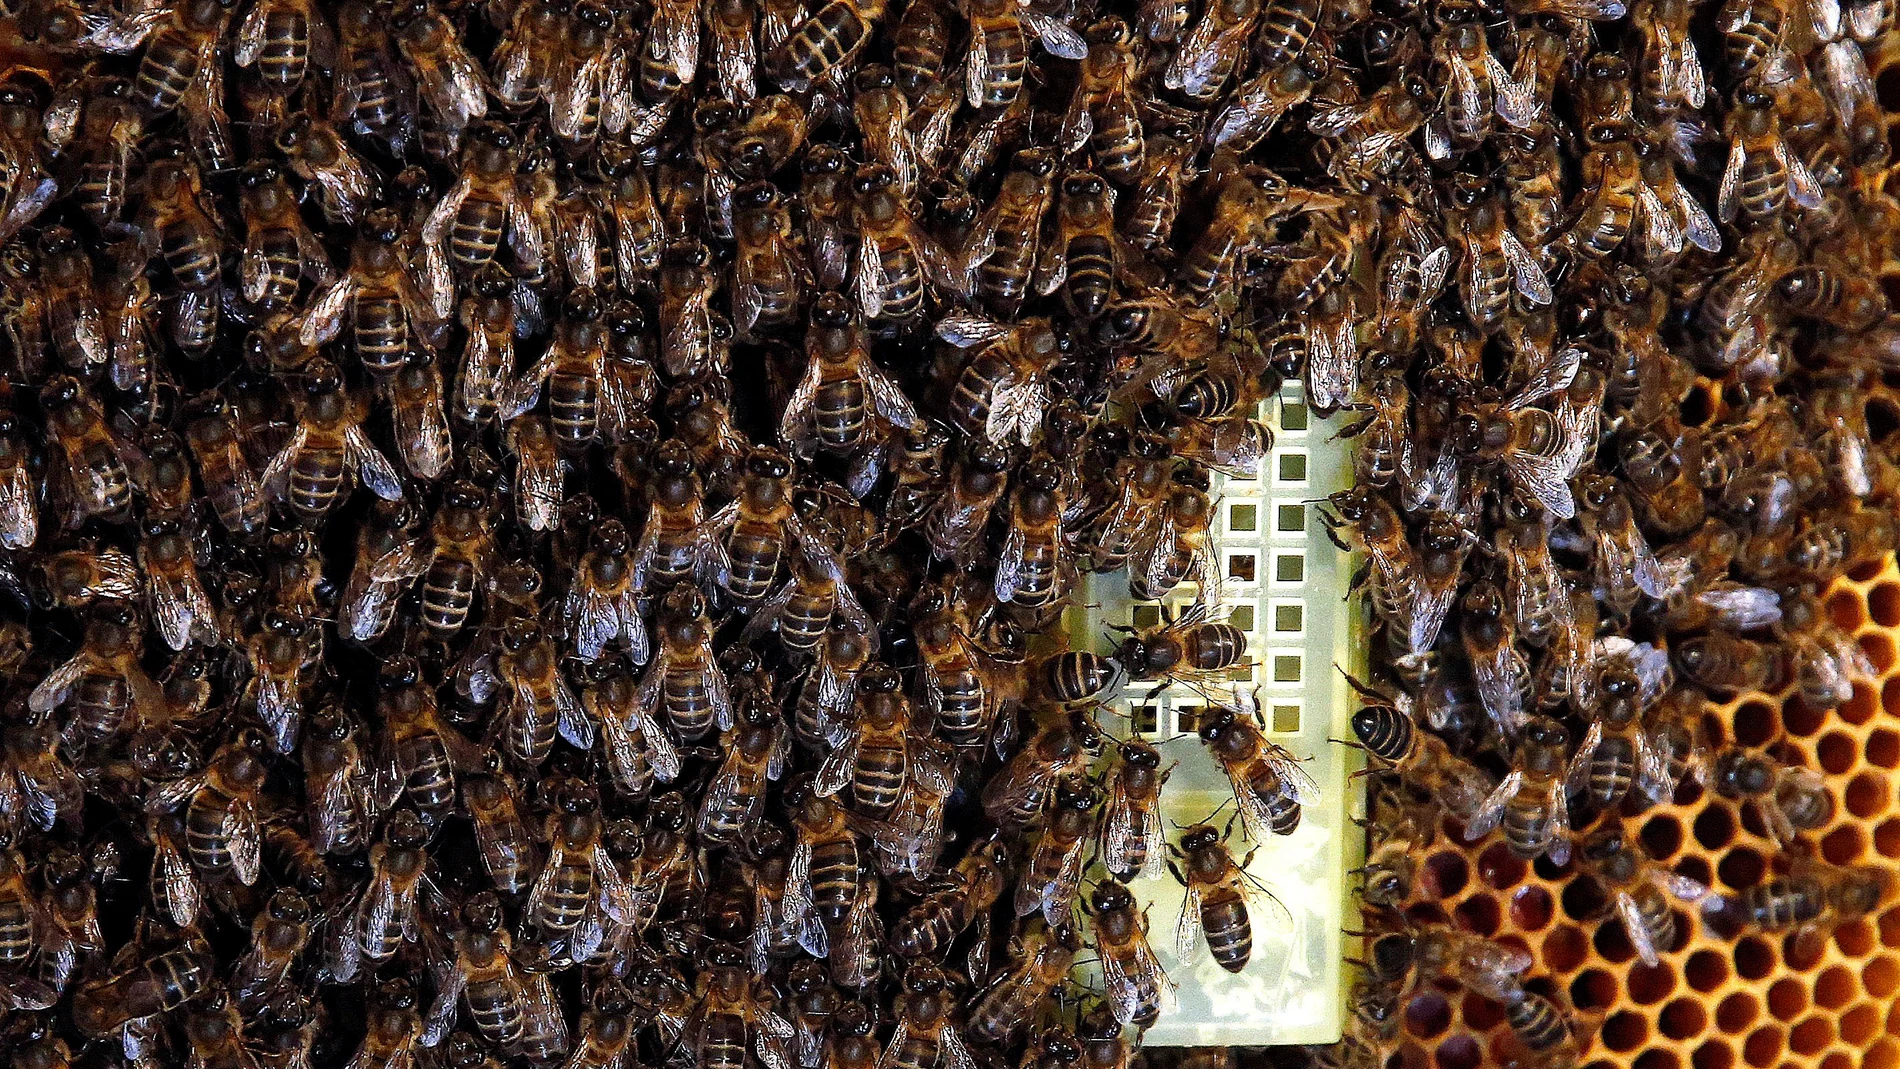  Enjambre en torno a la abeja reina en el interior 